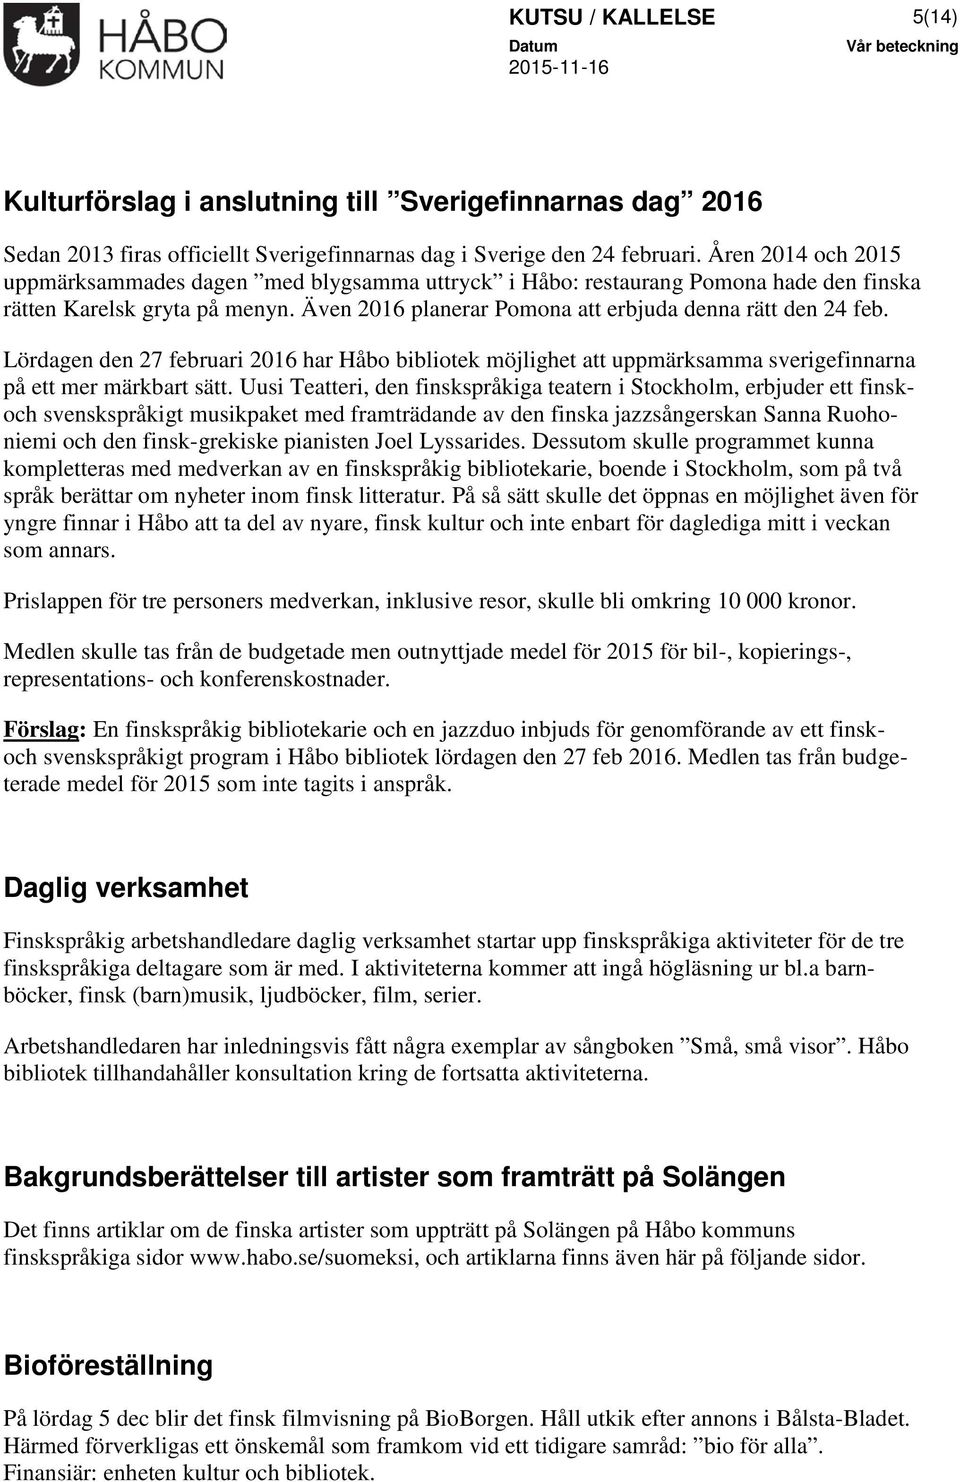 Lördagen den 27 februari 2016 har Håbo bibliotek möjlighet att uppmärksamma sverigefinnarna på ett mer märkbart sätt.